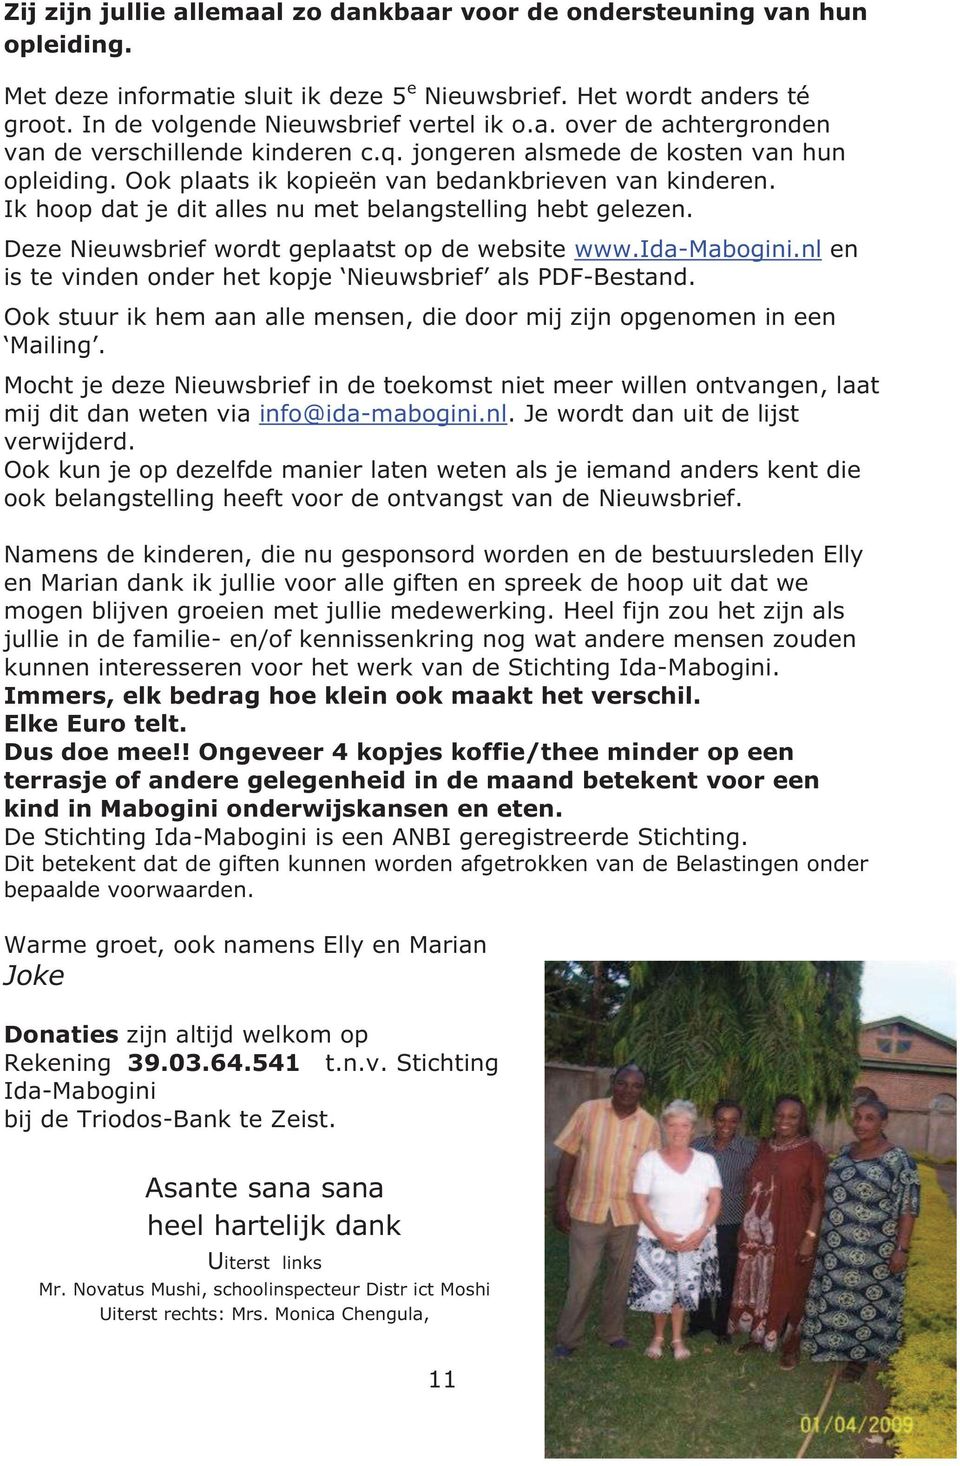 Deze Nieuwsbrief wordt geplaatst op de website www.ida-mabogini.nl en is te vinden onder het kopje Nieuwsbrief als PDF-Bestand.